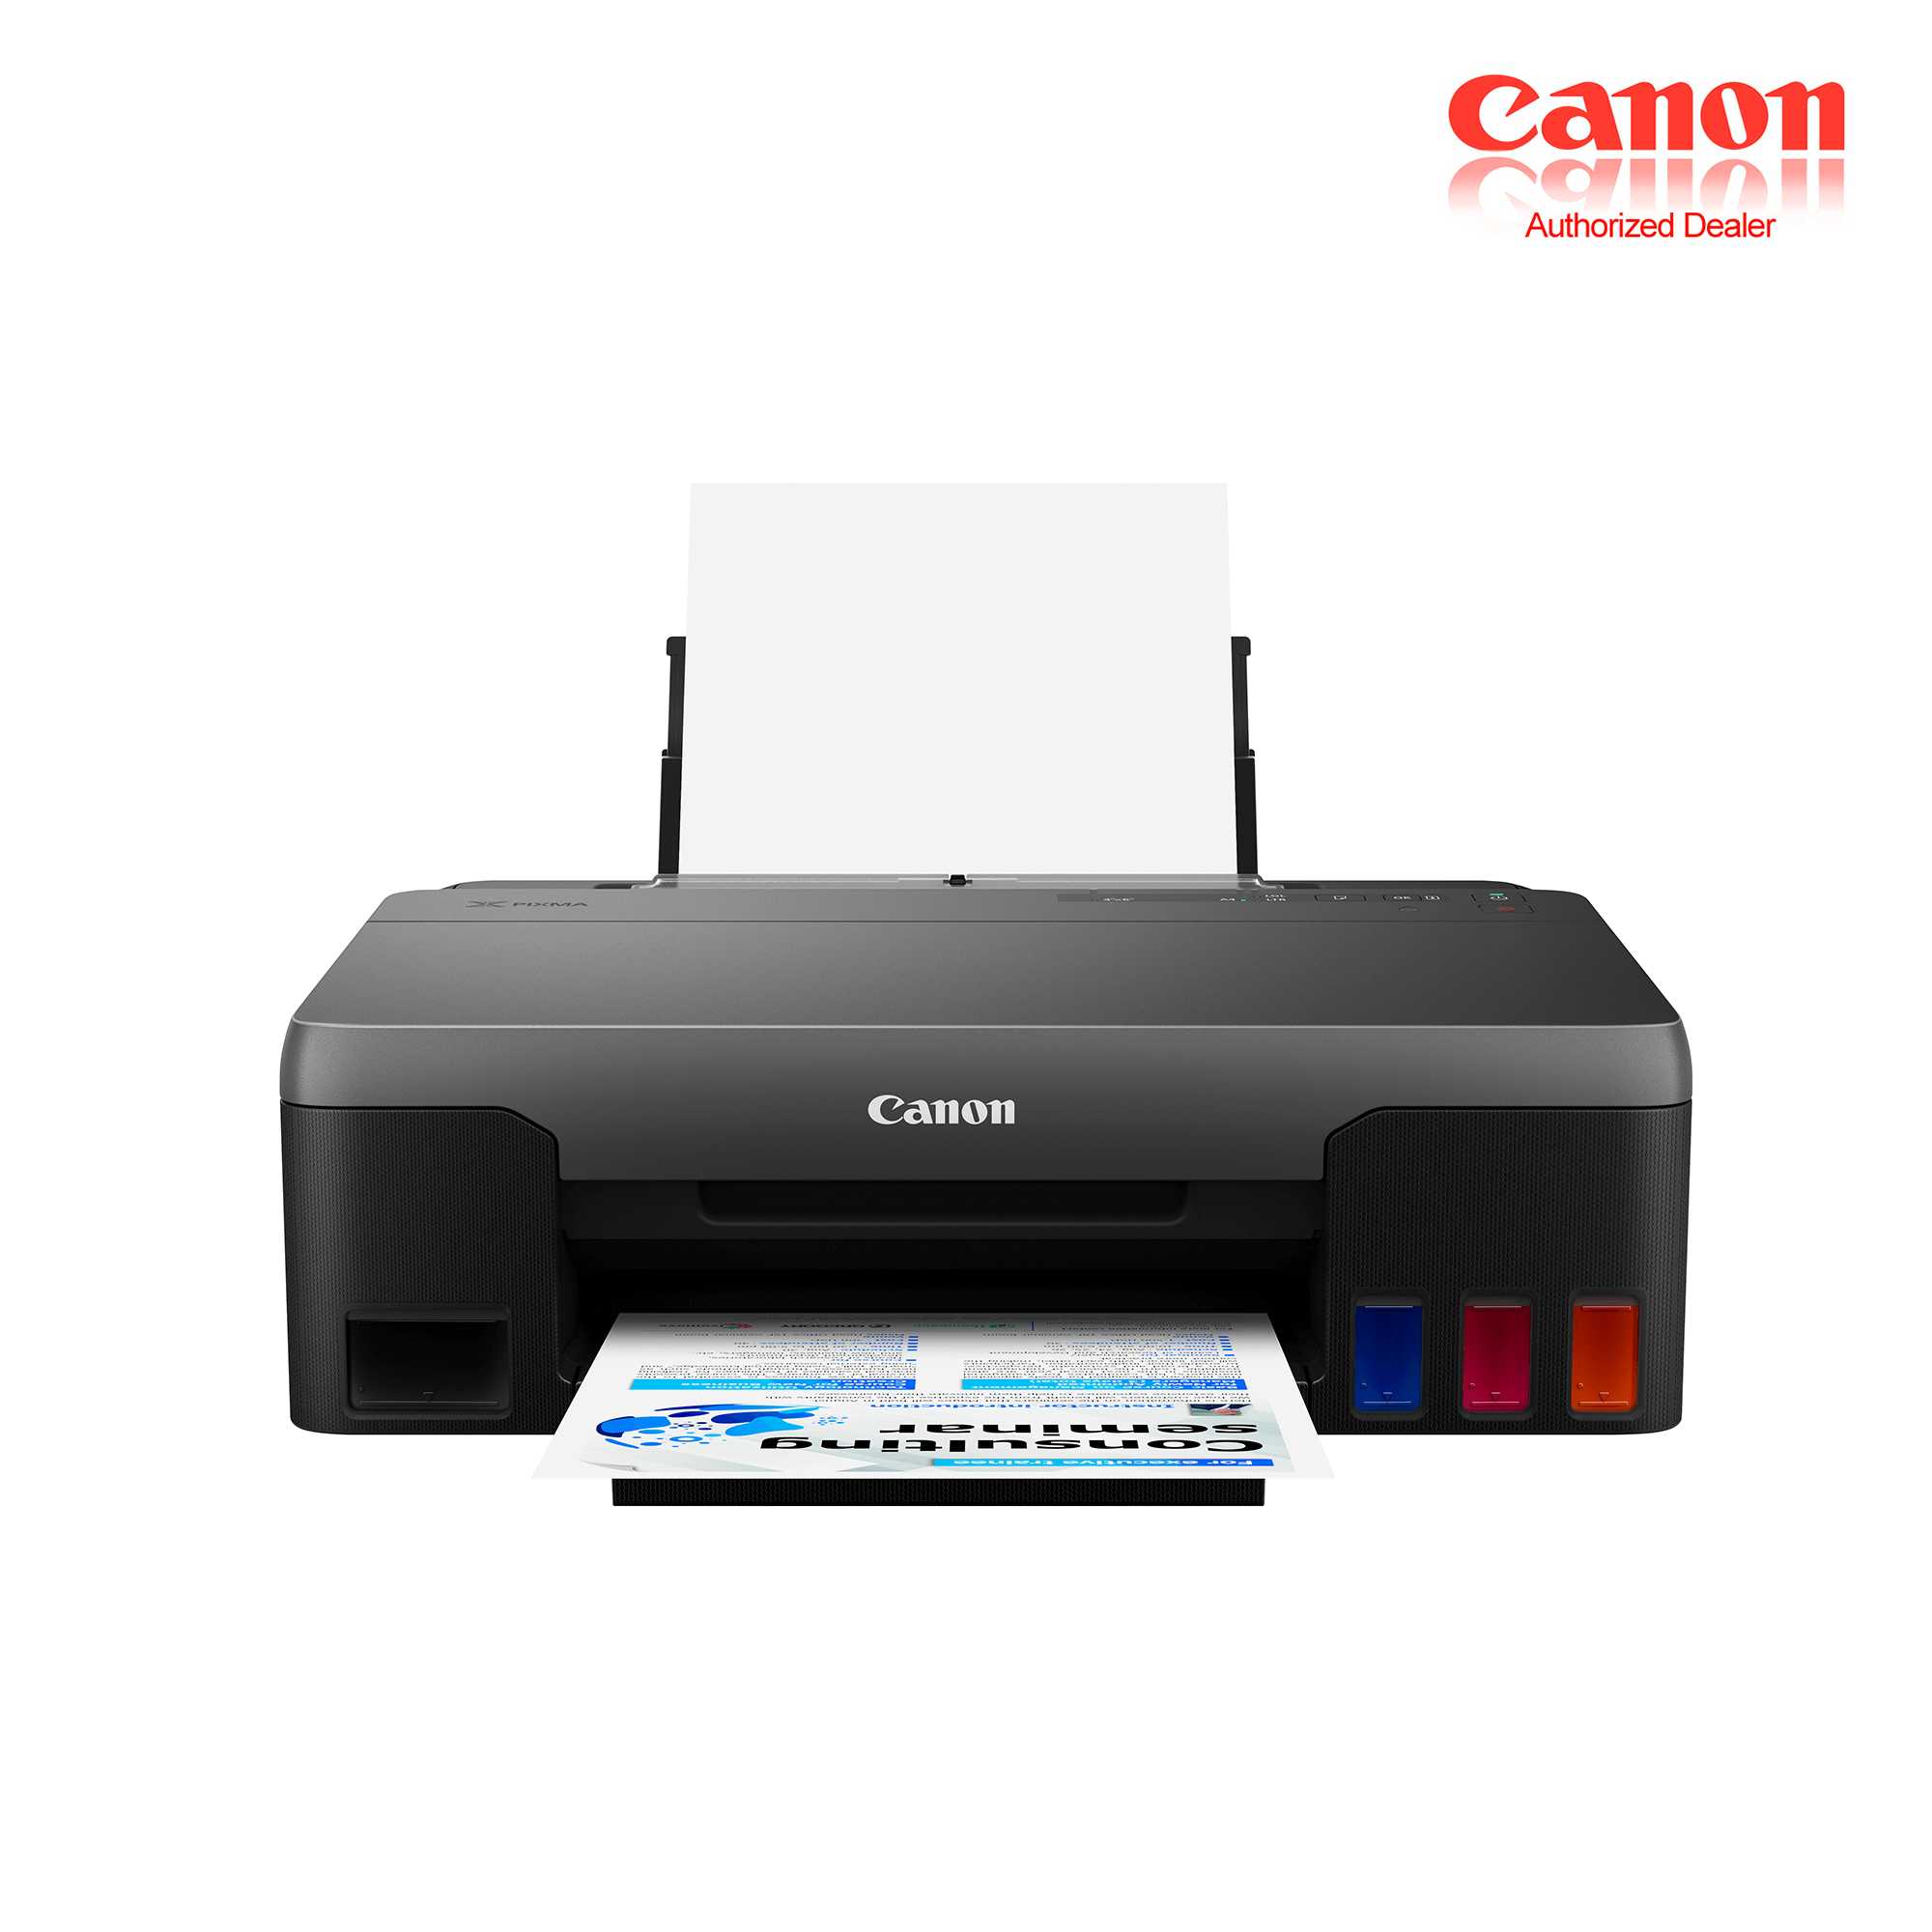 Canon PIXMA G1020 Easy Refillable Ink Tank Printer rear paper feeder